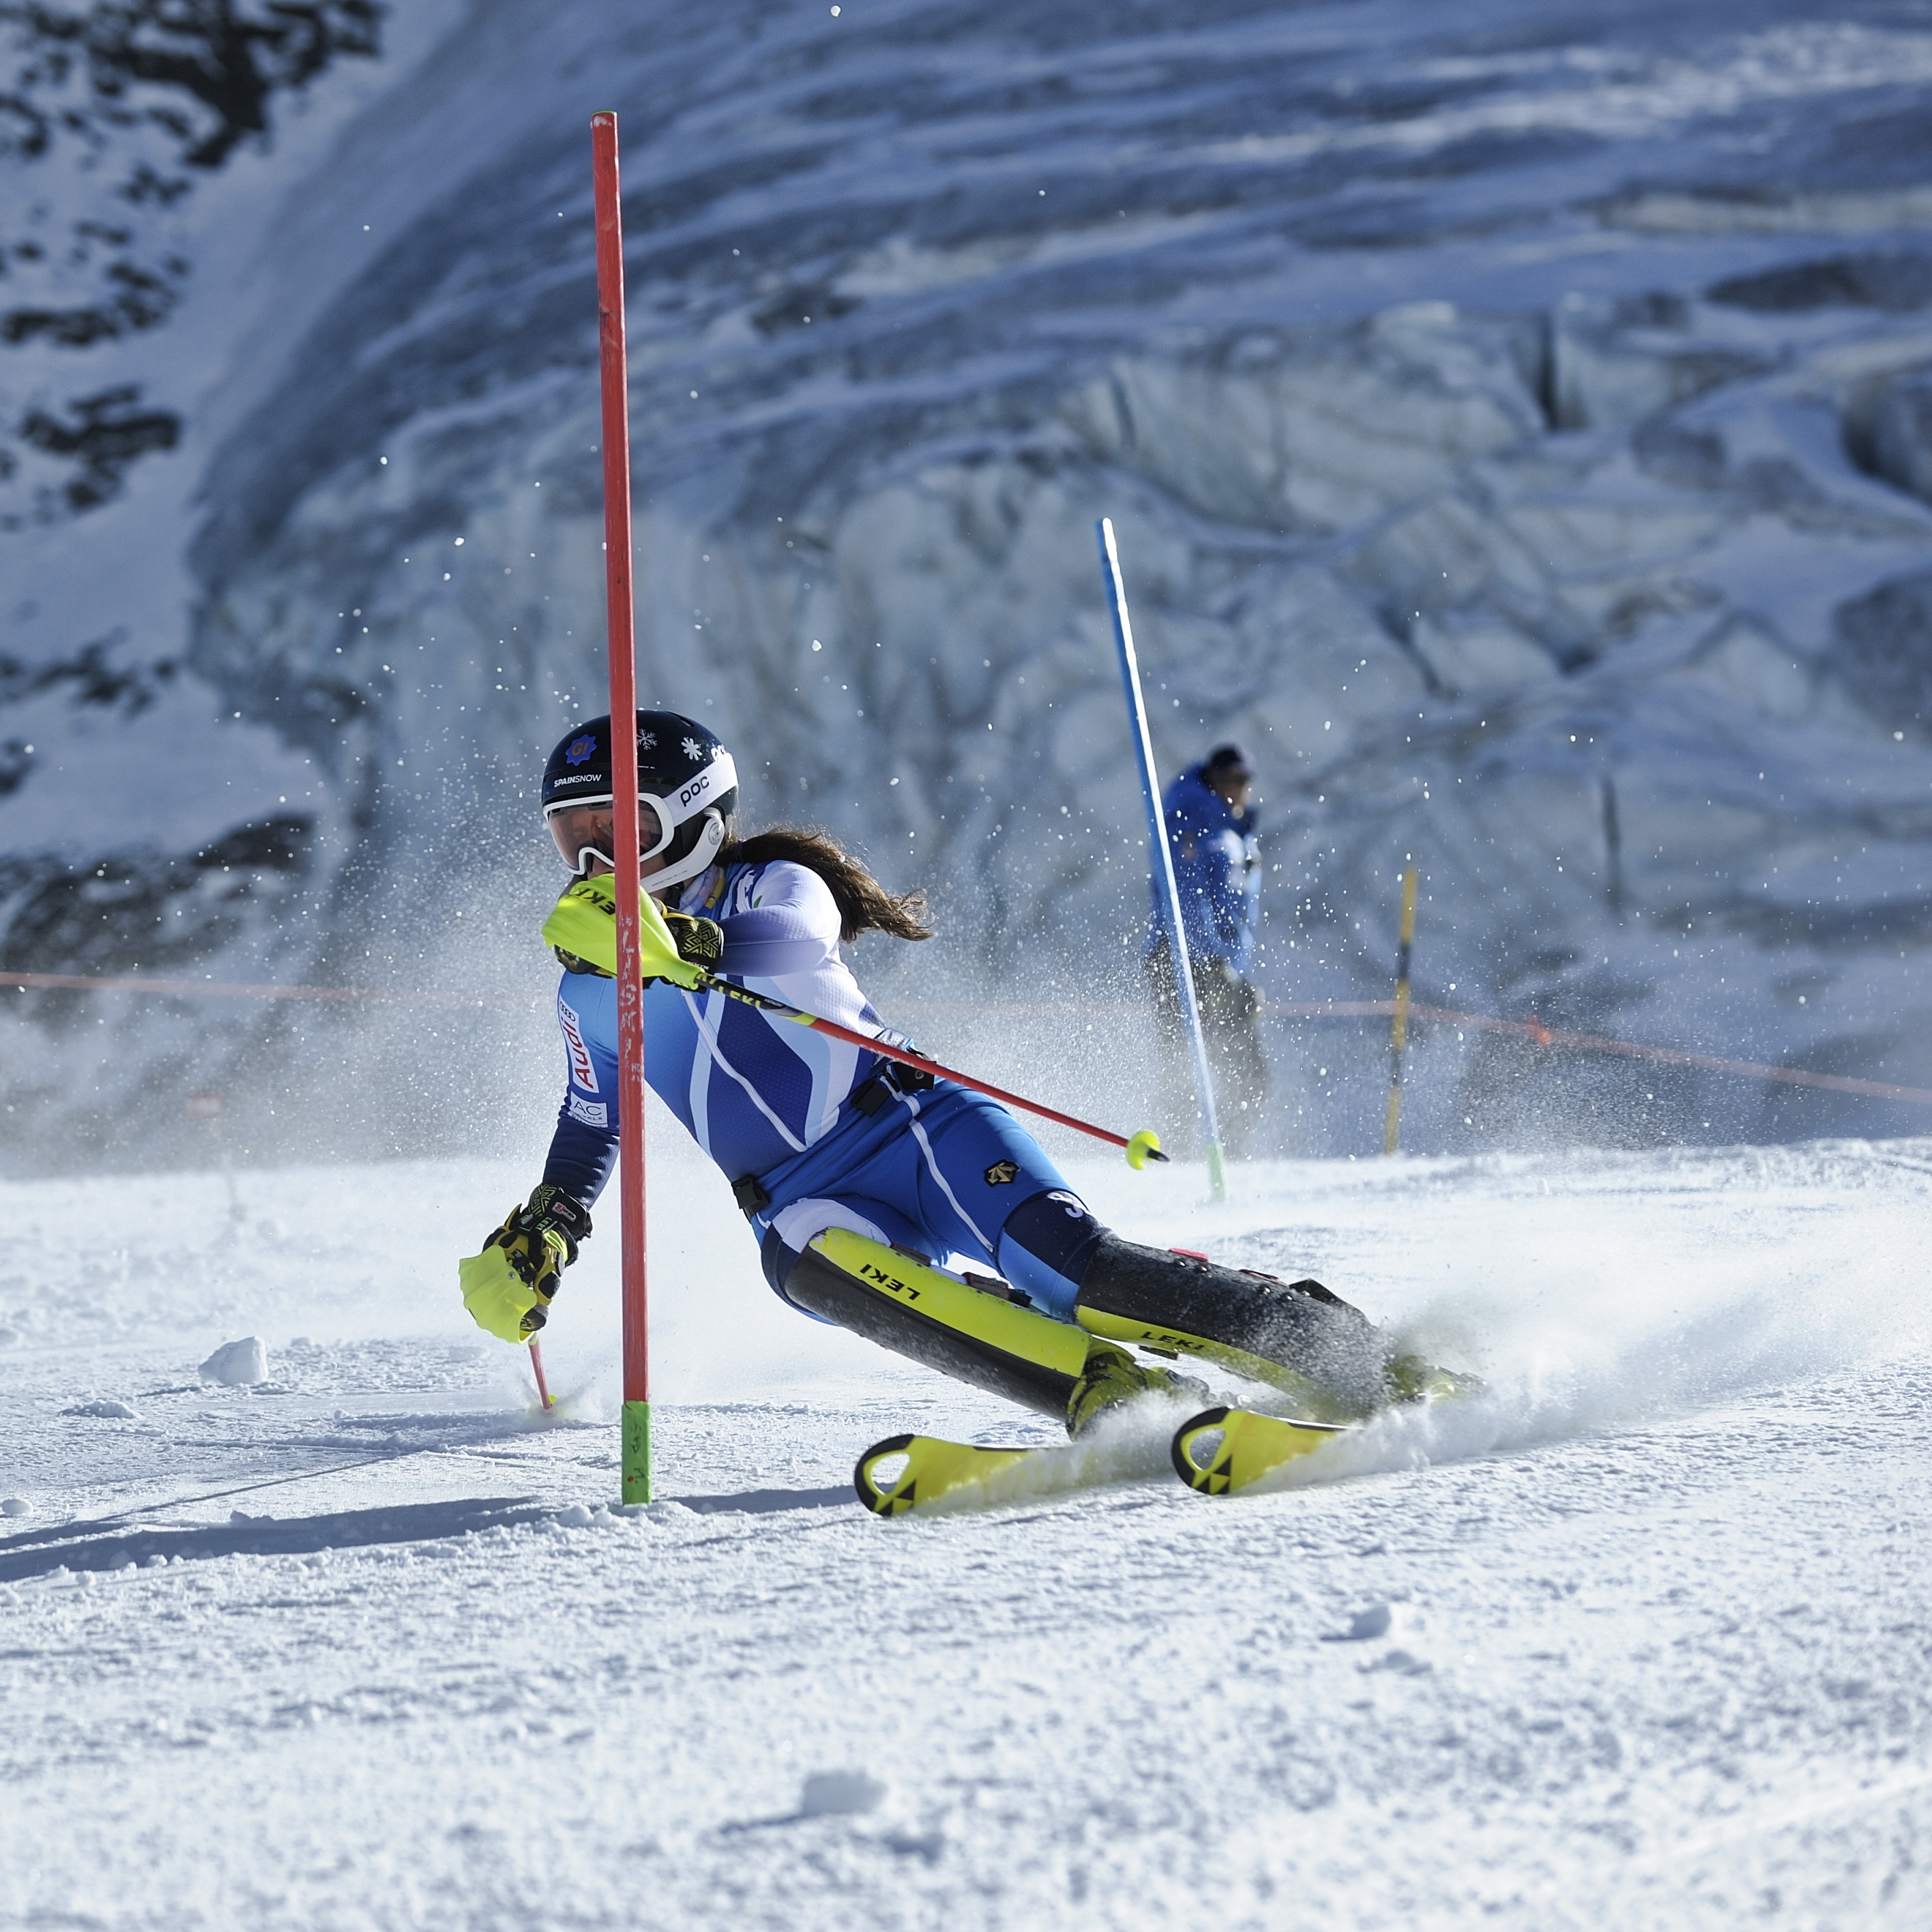 Españoles en las pruebas técnicas de los Campeonatos del Mundo de esquí alpino de Äre 2019 (Suecia)